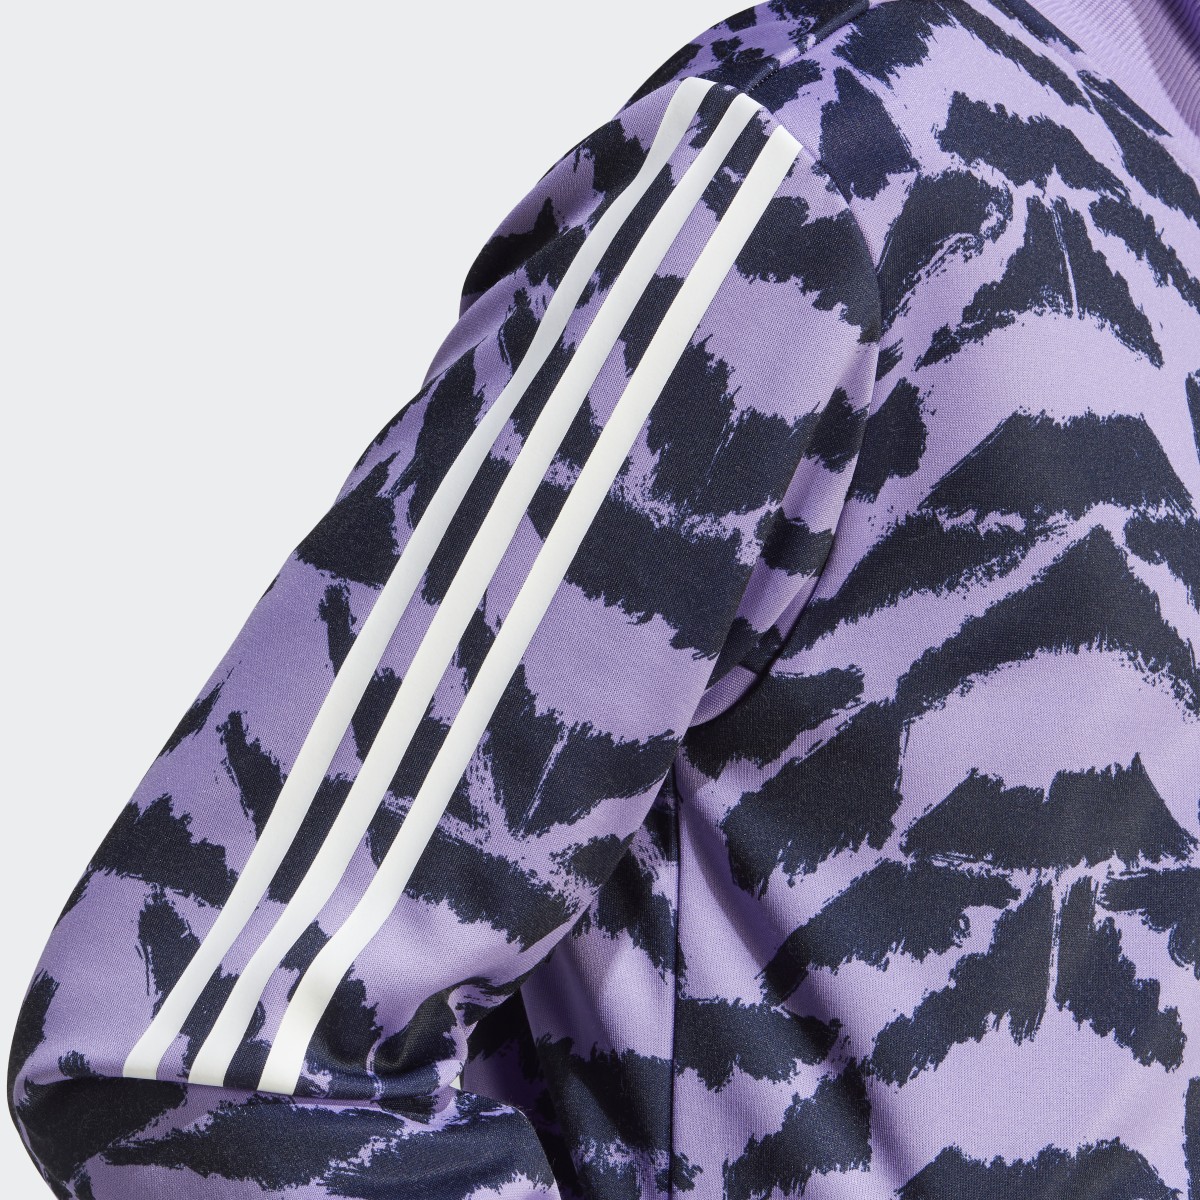 Adidas Tiro Suit Up Track Jacket. 11